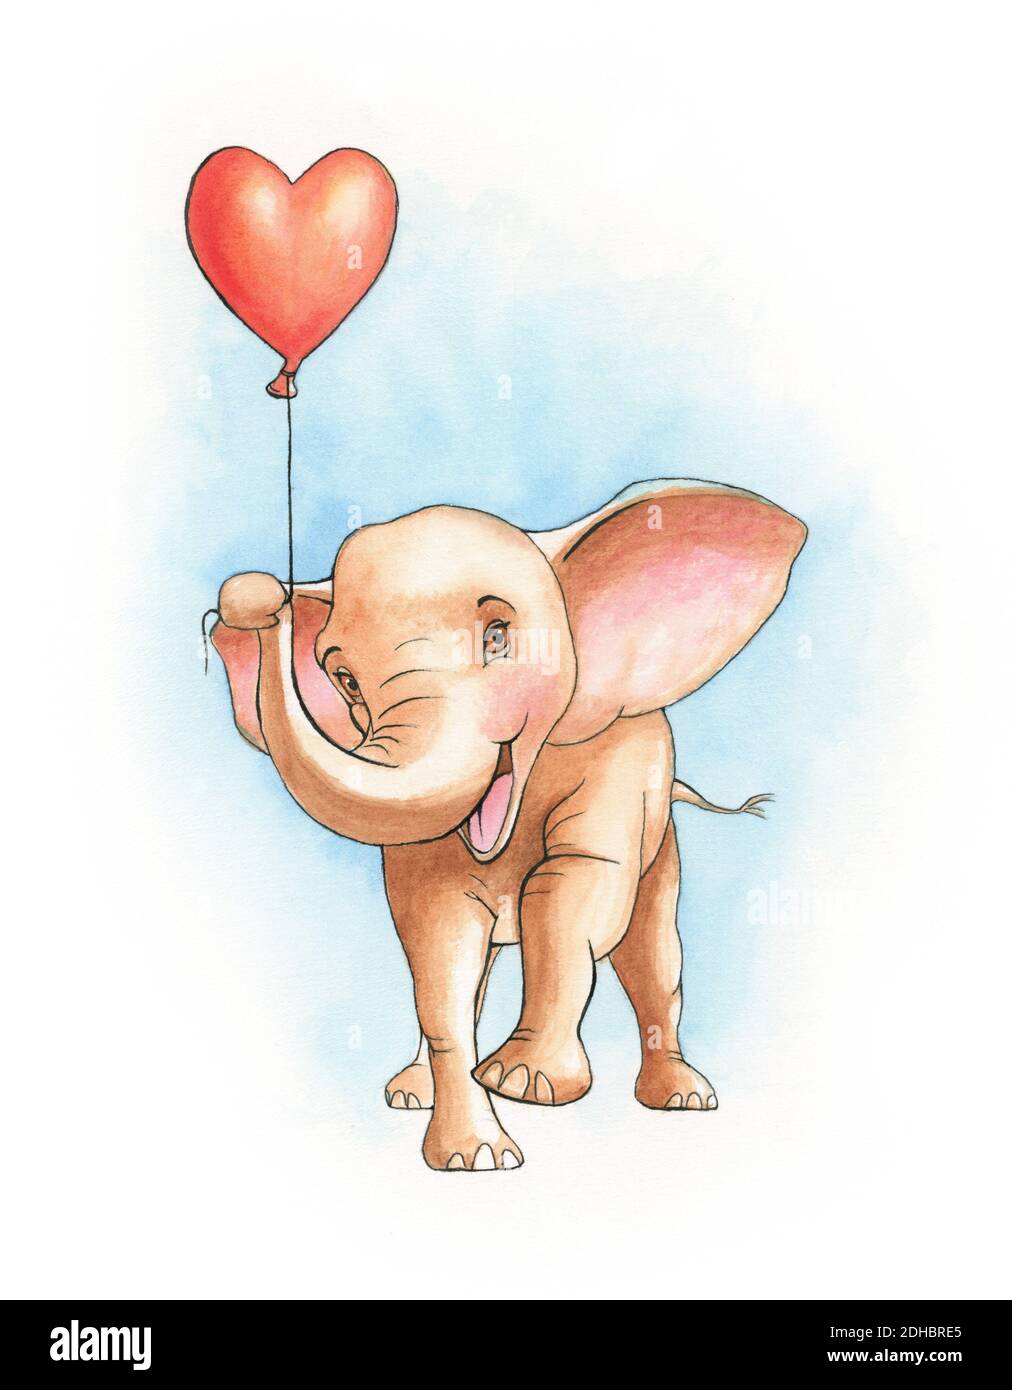 Joli éléphant tenant un ballon en forme de coeur. Illustration aquarelle sur papier. Banque D'Images